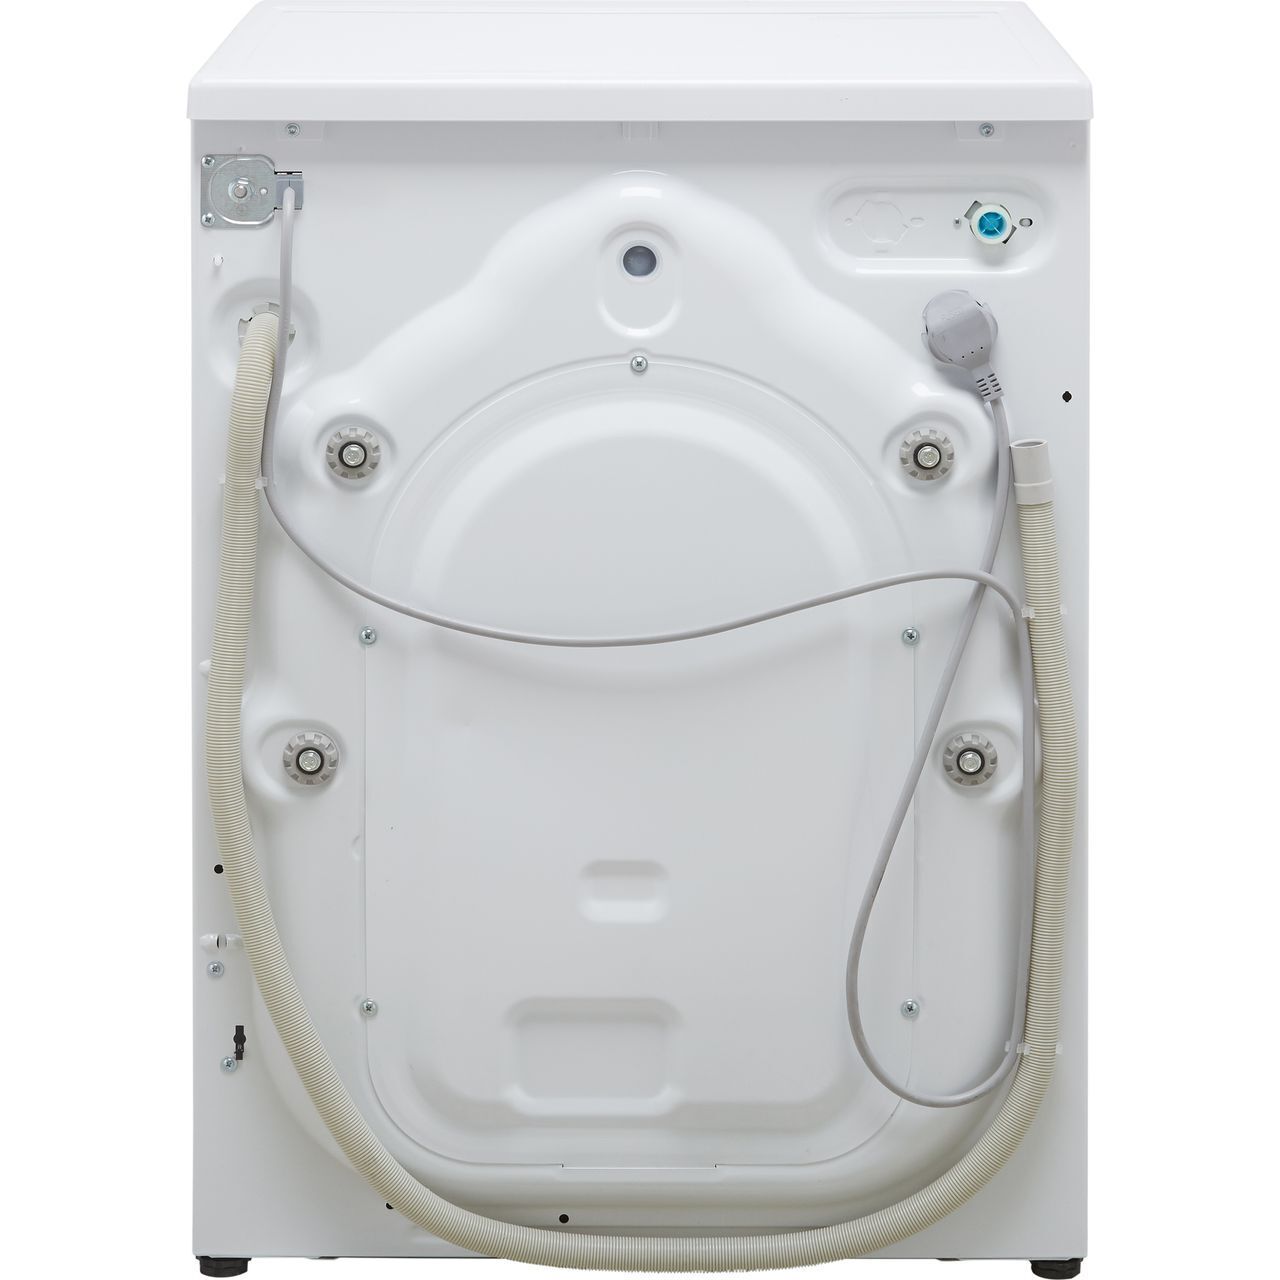 Beko 9Kg A+++ Rated White Washing Machine